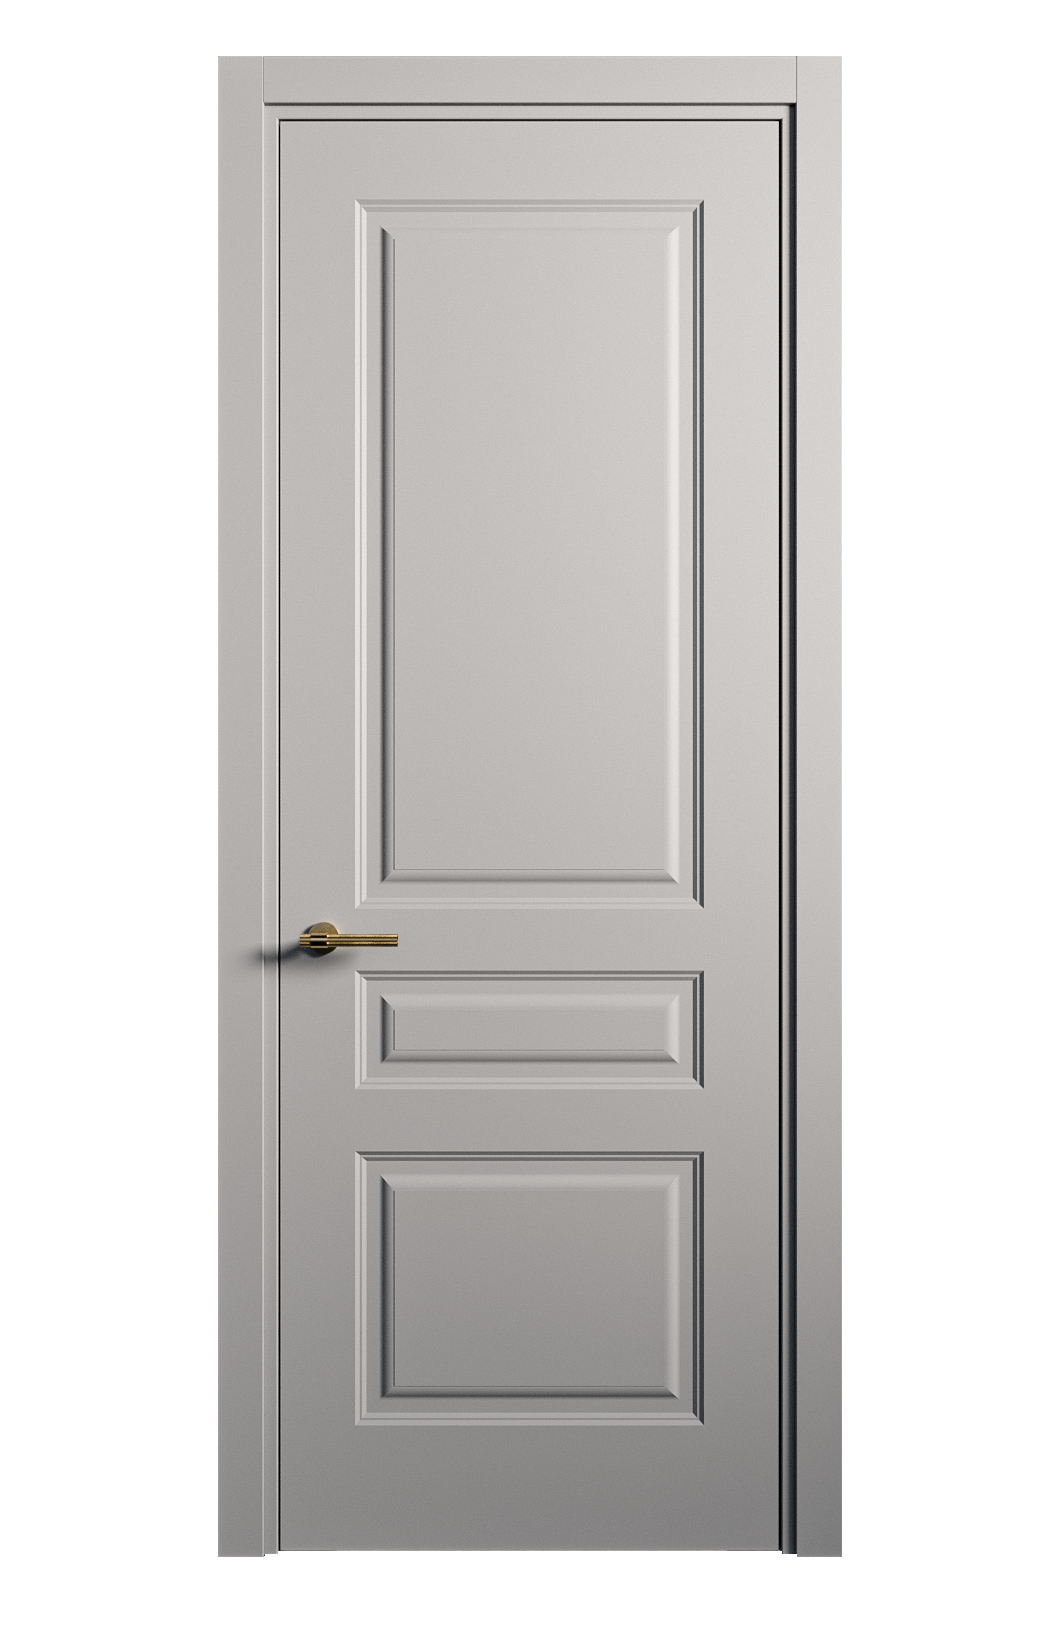 Межкомнатная дверь Вита-2 глухая эмаль ral 7040 26329